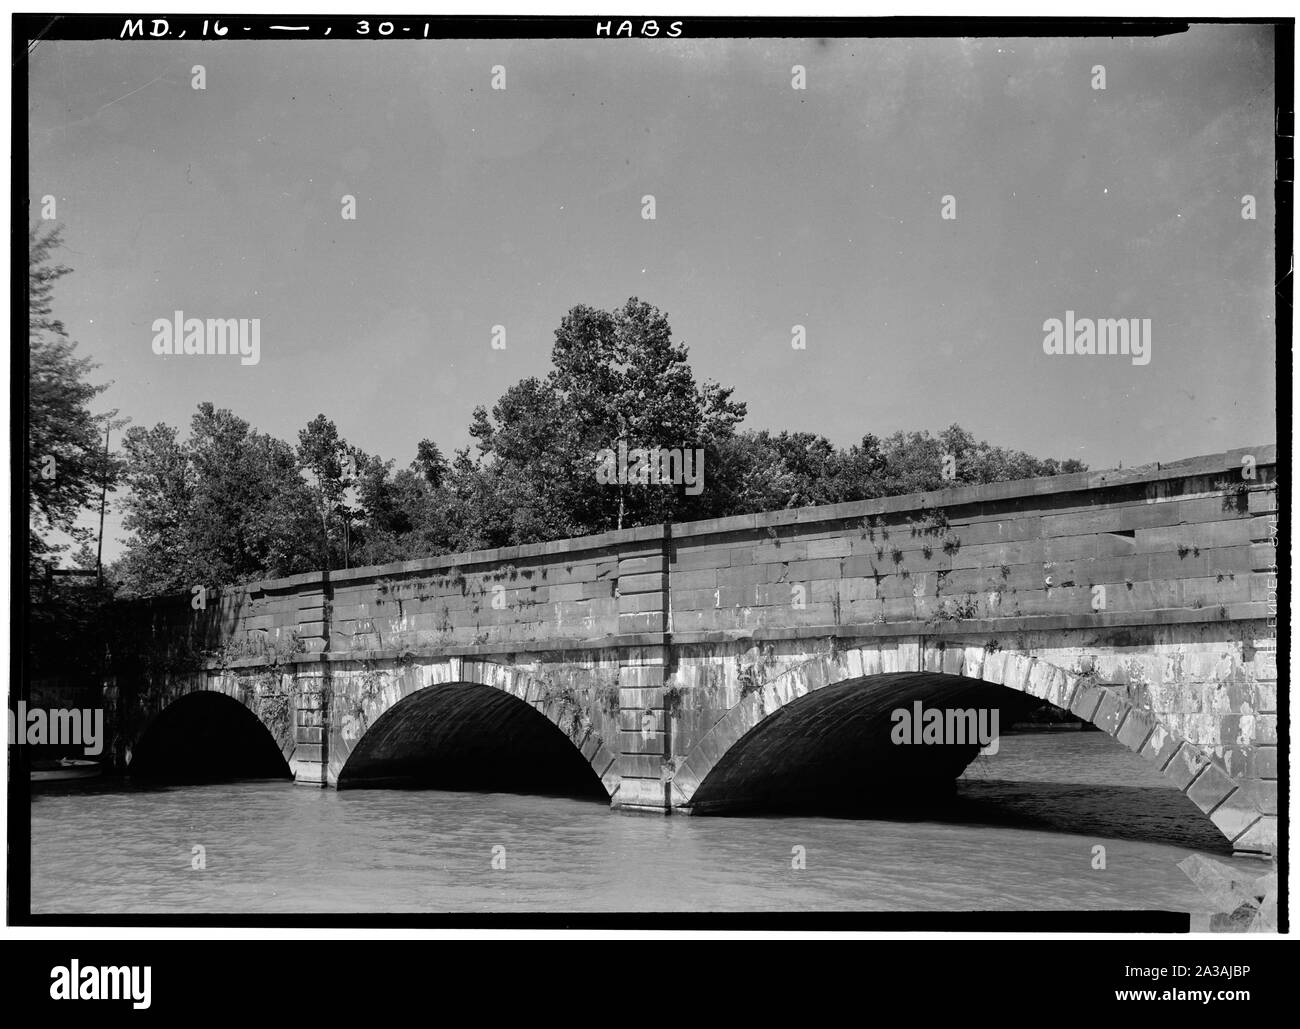 Foto der Seneca Aquädukt (Nr. 1) Vor der vorderen Radkastens zusammengebrochen. HABS sagt: 1. Historischer amerikanischer Gebäude Umfrage John O. Brostrup, Fotograf September 16, 1936, 11:35 A. M. BLICK AUF Aquädukt aus Südosten - Chesapeake and Ohio Canal, aquädukt Nr. 1, Riley Lock's Road Nähe, State Route 190, Seneca, Montgomery County, MD; Stockfoto